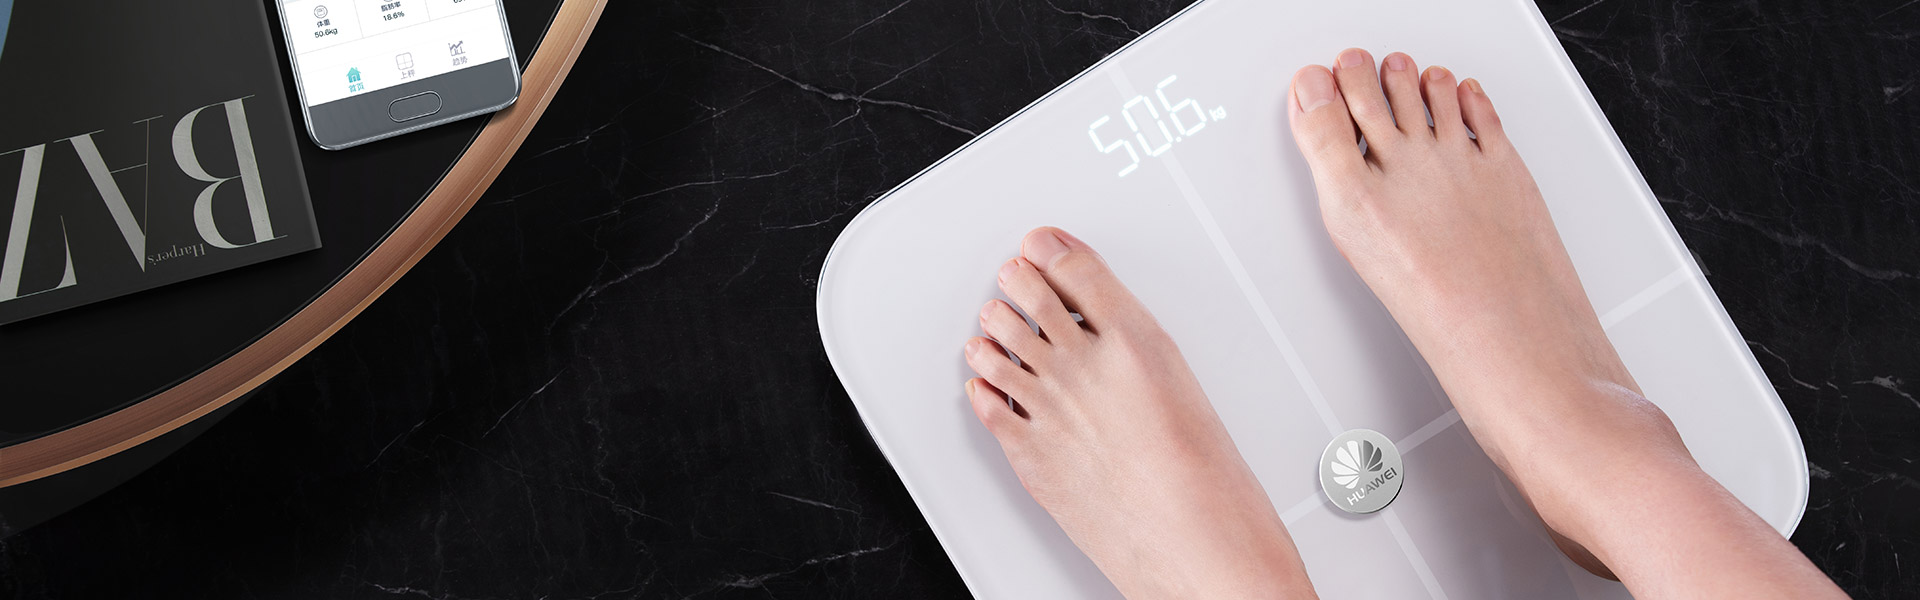 View Body Weight & Fat Offline